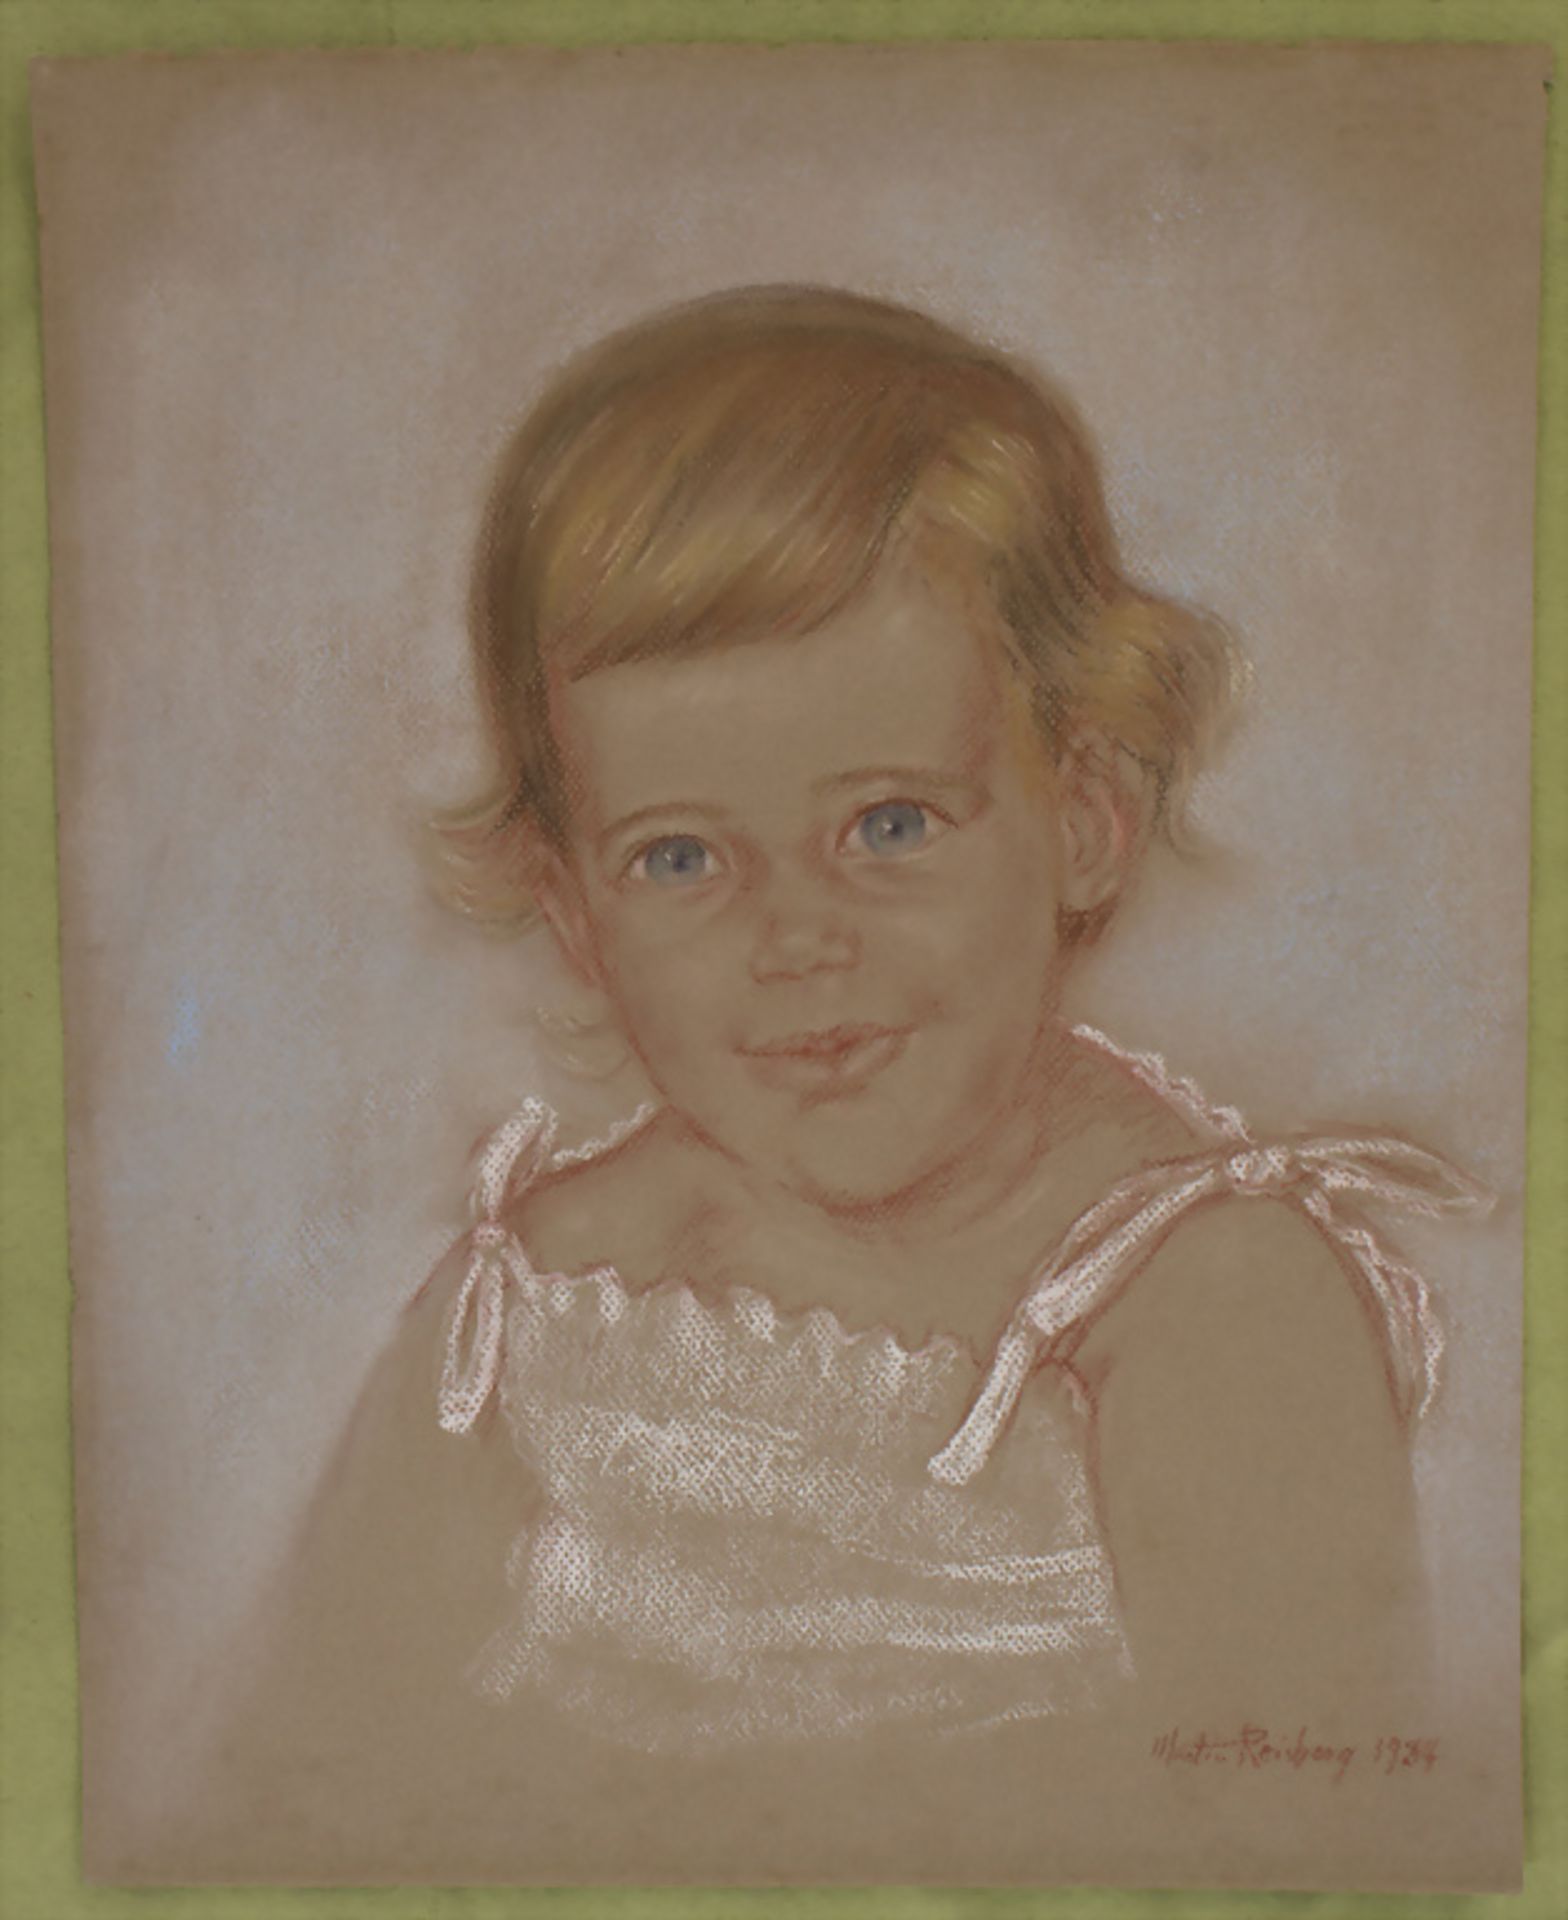 Martin Reisberg (1923-?), 'Porträt eines kleinen Mädchens' / 'A portrait of a baby girl', 1984/87